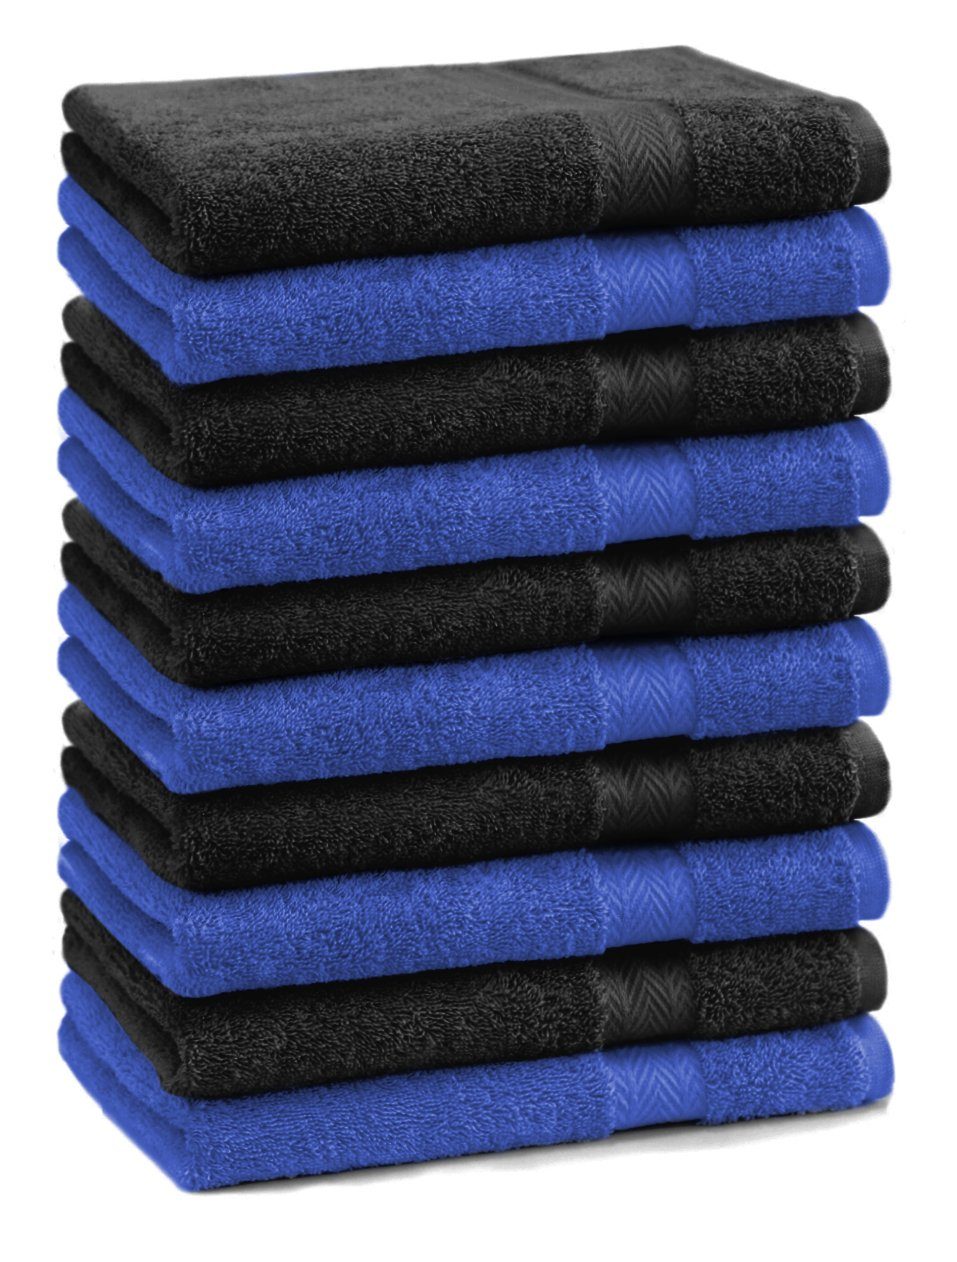 Betz Seiftuch 10 Stück royalblau/schwarz 100% 30x30 cm Baumwolle Premium Seiftücher